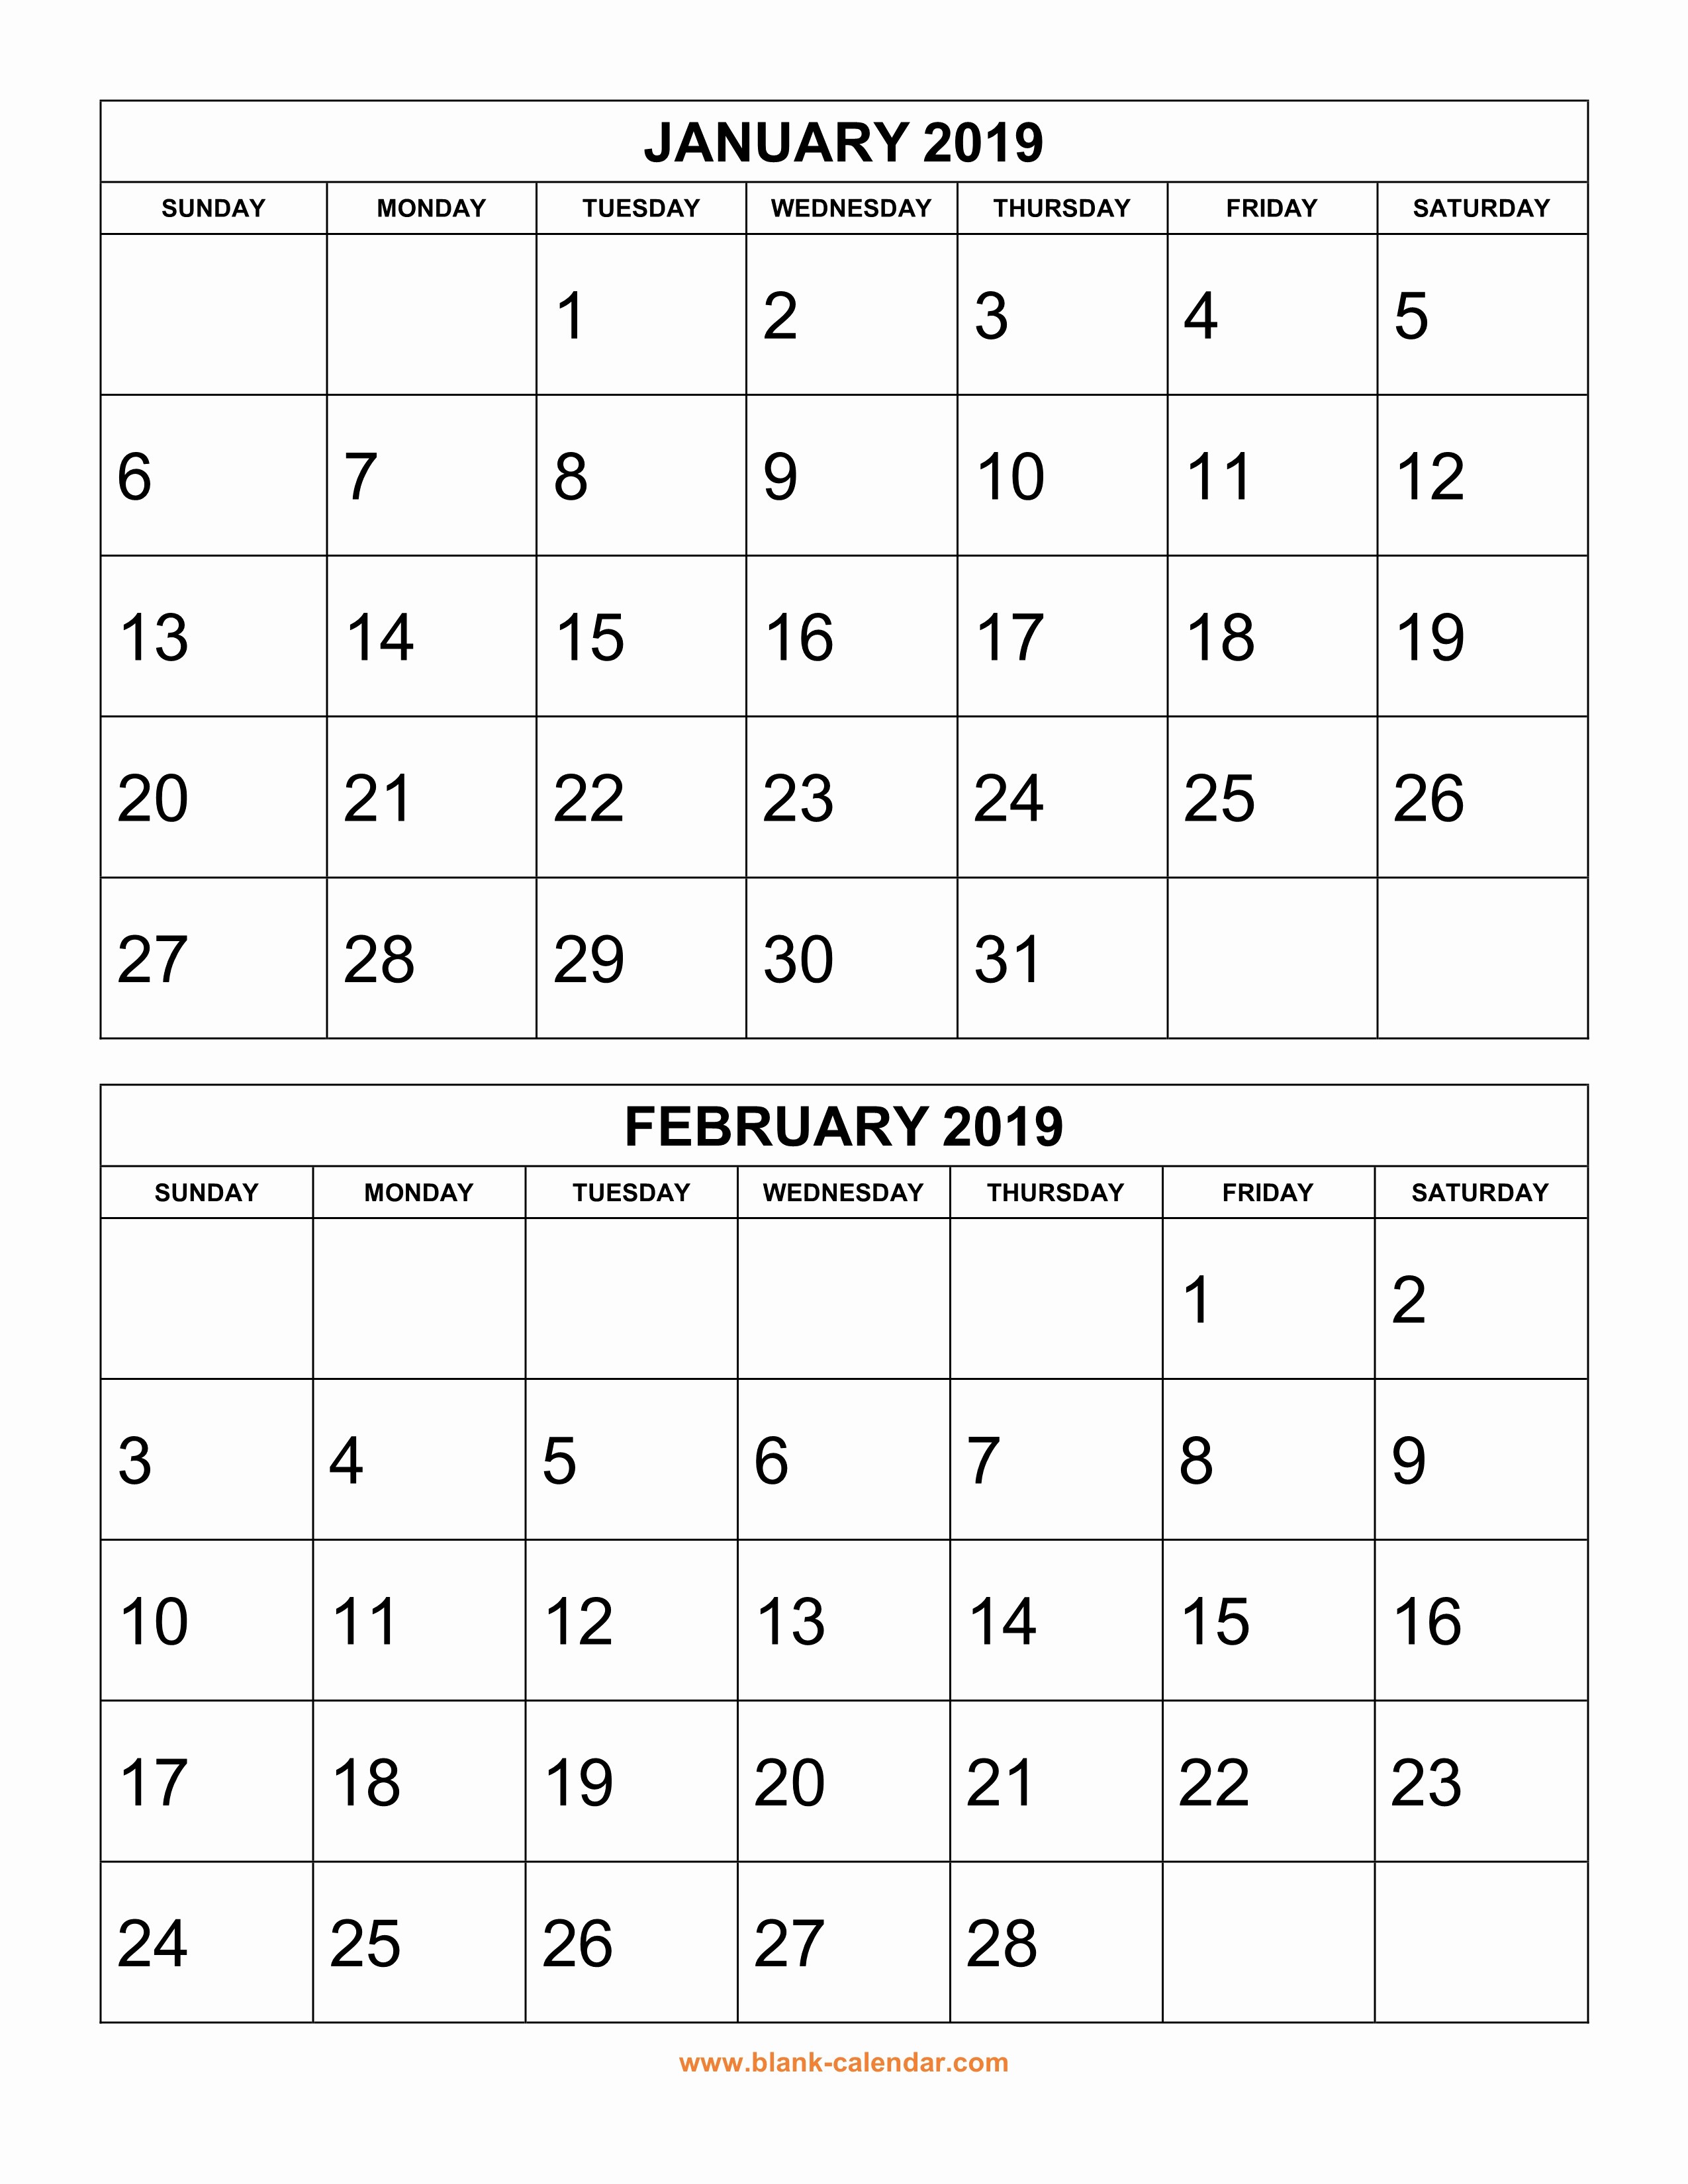 2019 Printable Calendar by Month Elegant Free Download Printable Calendar 2019 2 Months Per Page